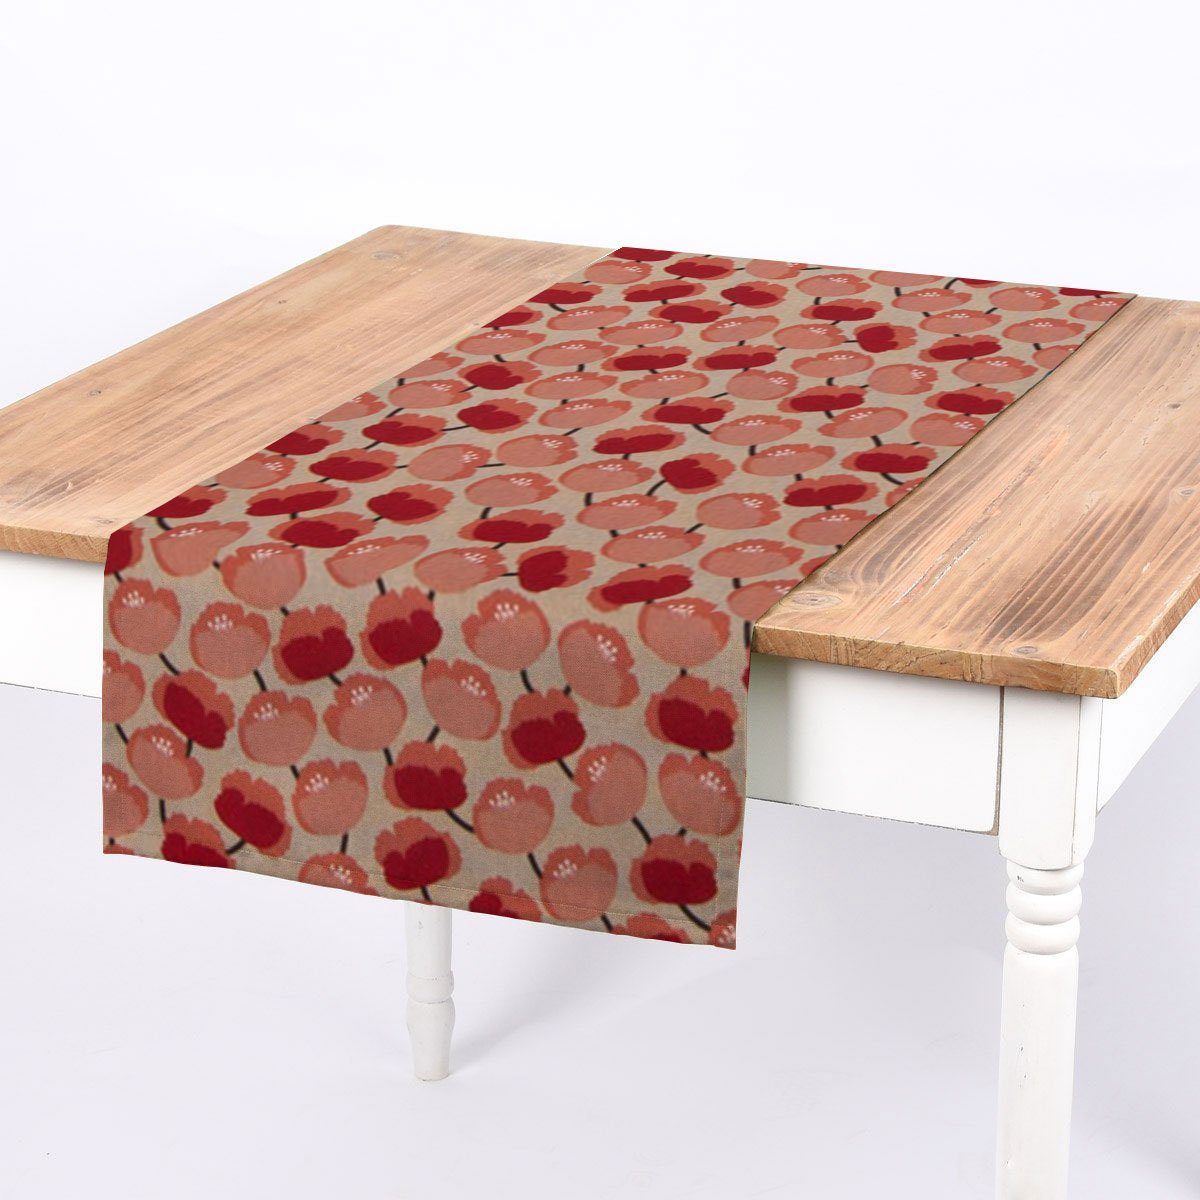 SCHÖNER LEBEN. Tischläufer SCHÖNER LEBEN. Tischläufer Pfingstrosen abstrakt natur rot koralle, handmade